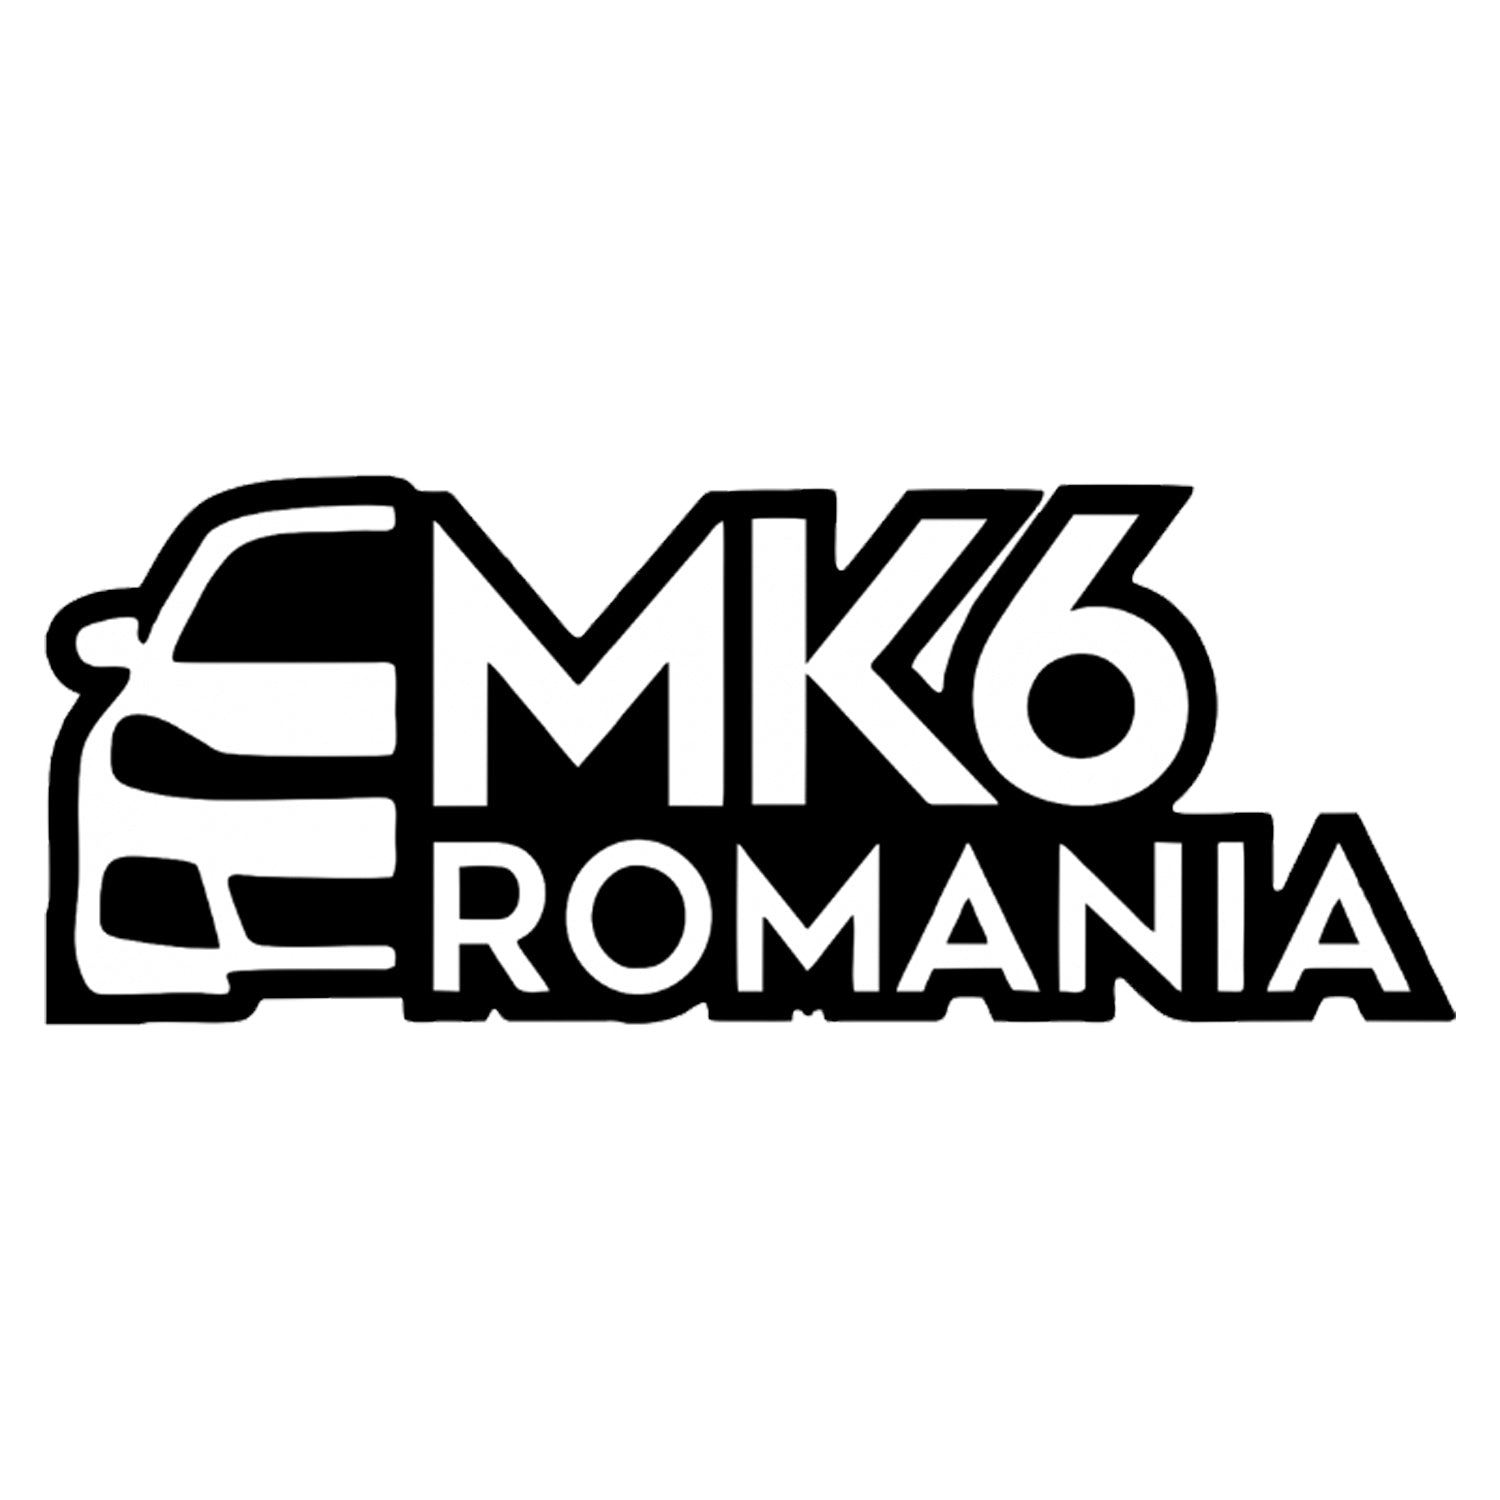 Sticker MK6 Romania